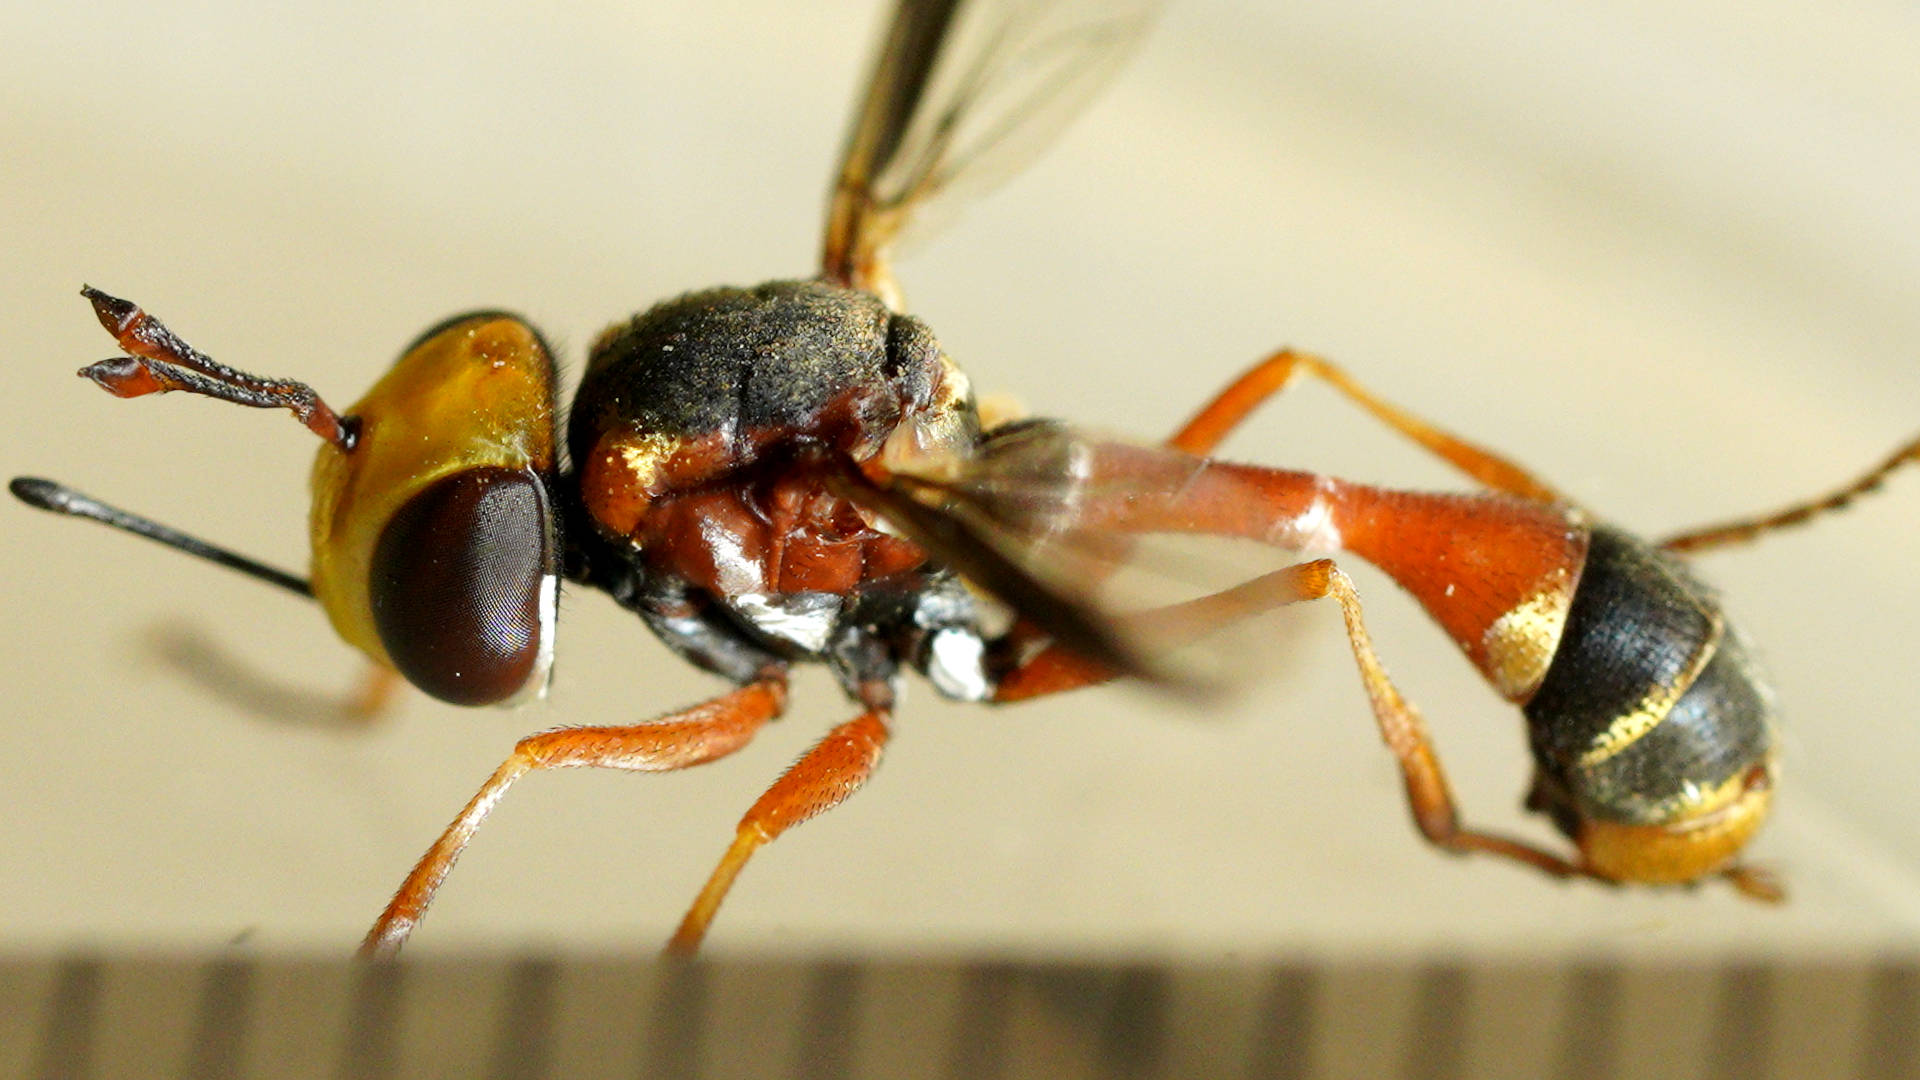 Ocelliless Thick-headed Fly (Physocephala australiana)